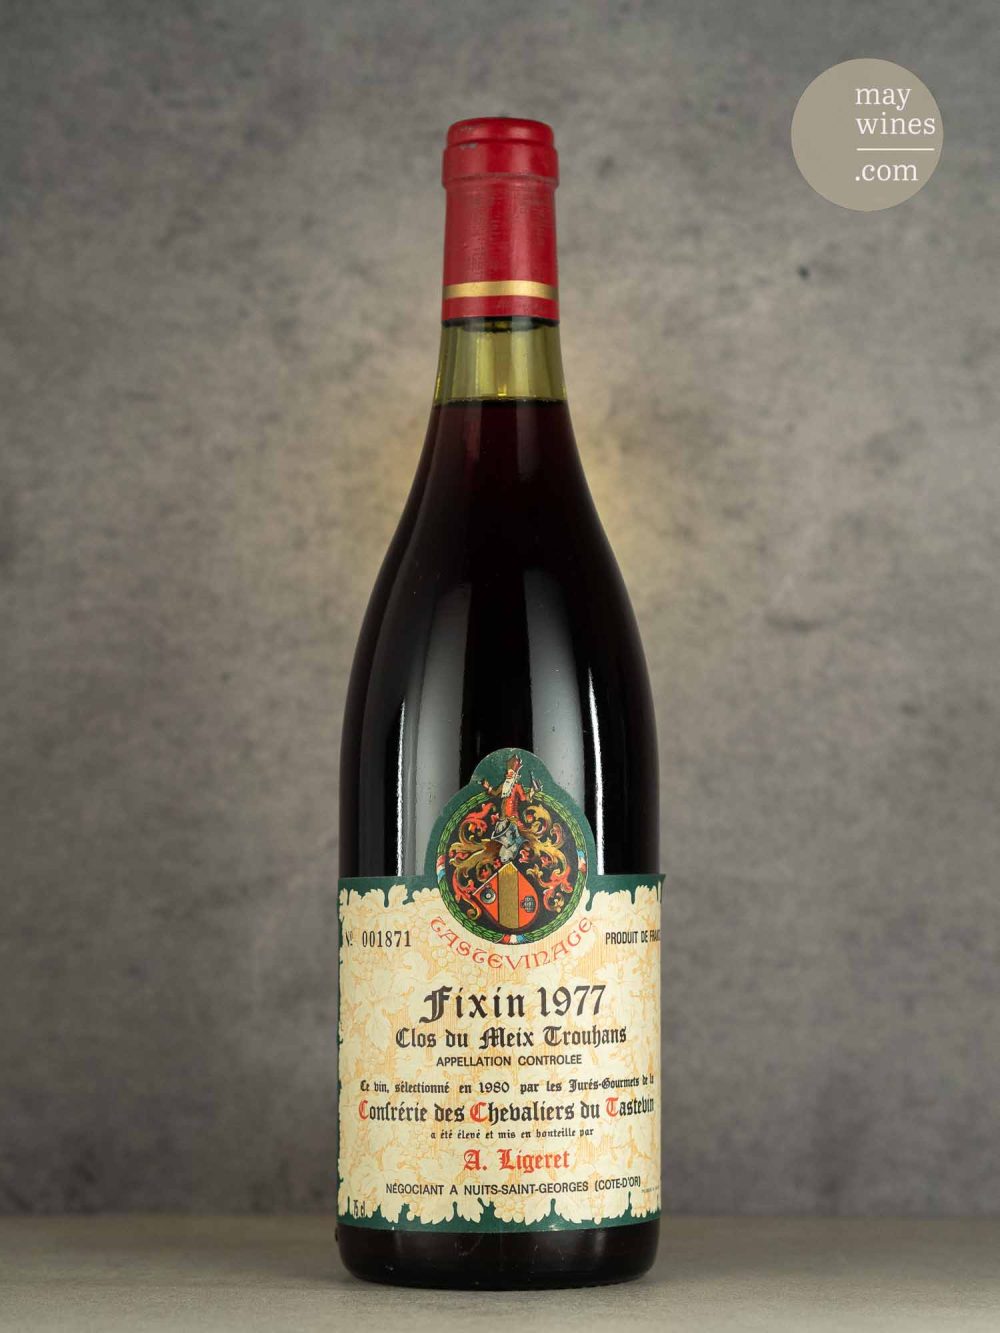 May Wines – Rotwein – 1977 Clos du Meix Trouhant AC - A. Ligeret